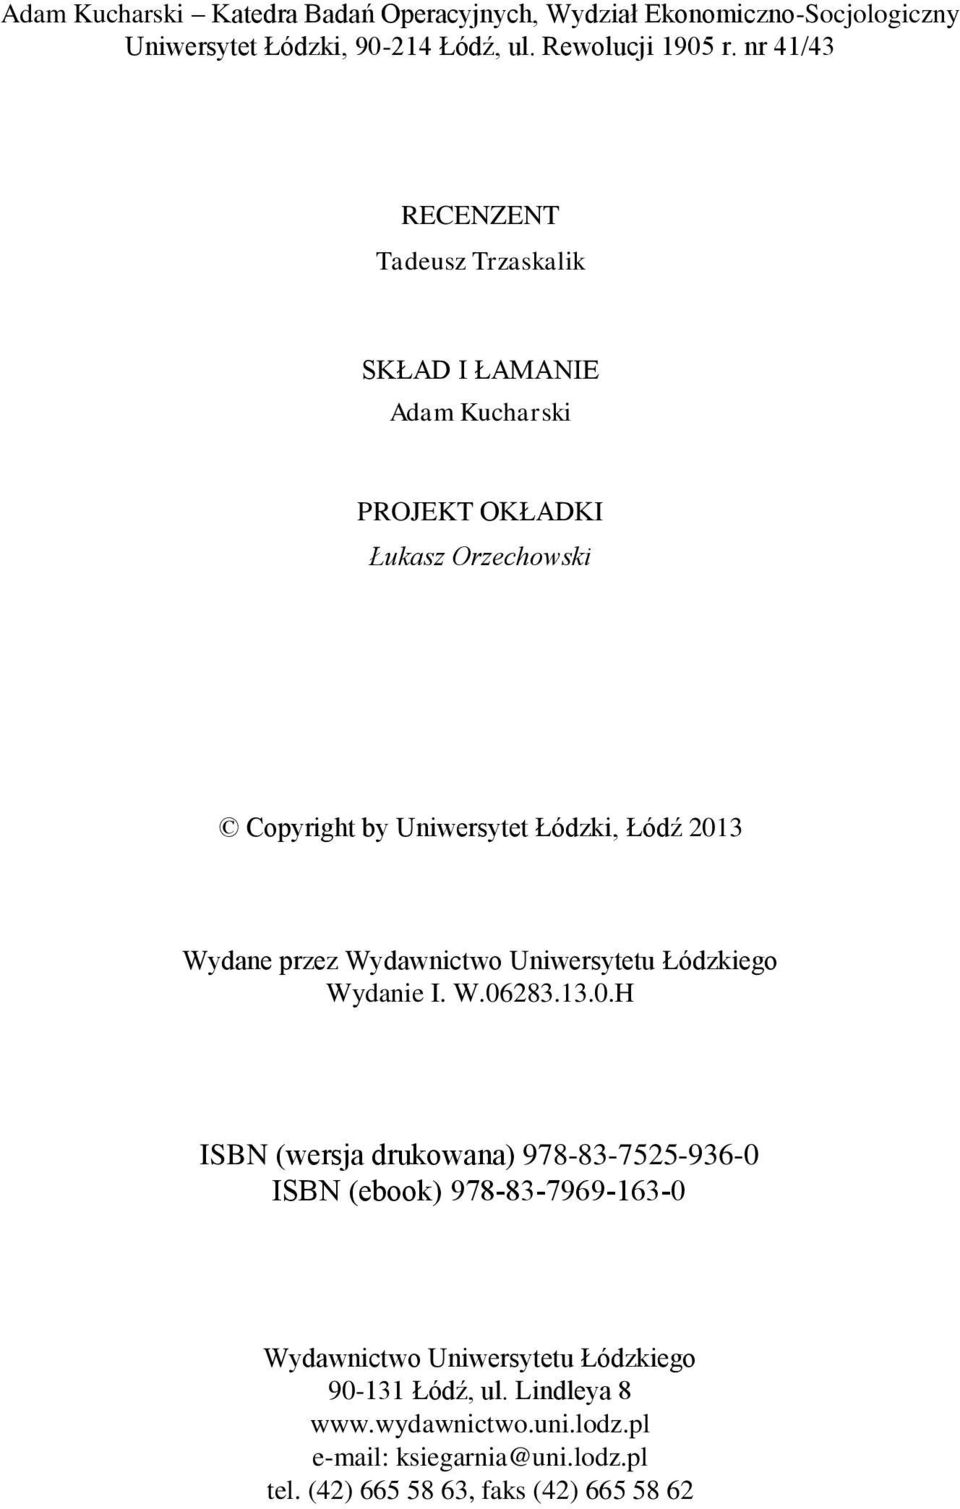 Wydane przez Wydawnictwo Uniwersytetu Łódzkiego Wydanie I. W.06